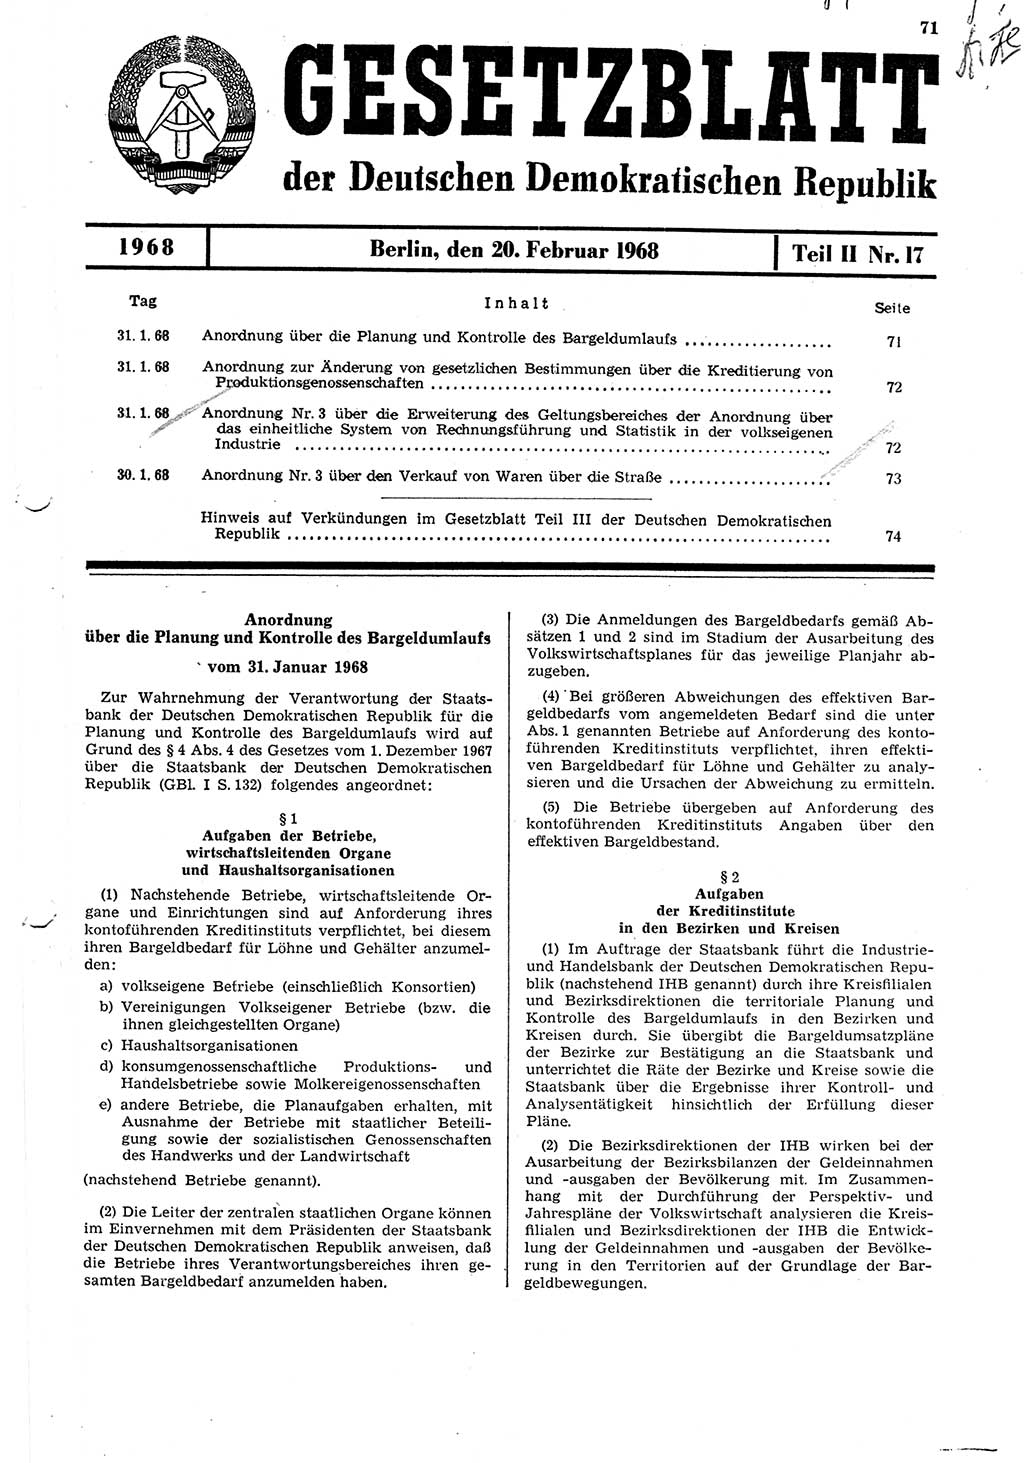 Gesetzblatt (GBl.) der Deutschen Demokratischen Republik (DDR) Teil ⅠⅠ 1968, Seite 71 (GBl. DDR ⅠⅠ 1968, S. 71)